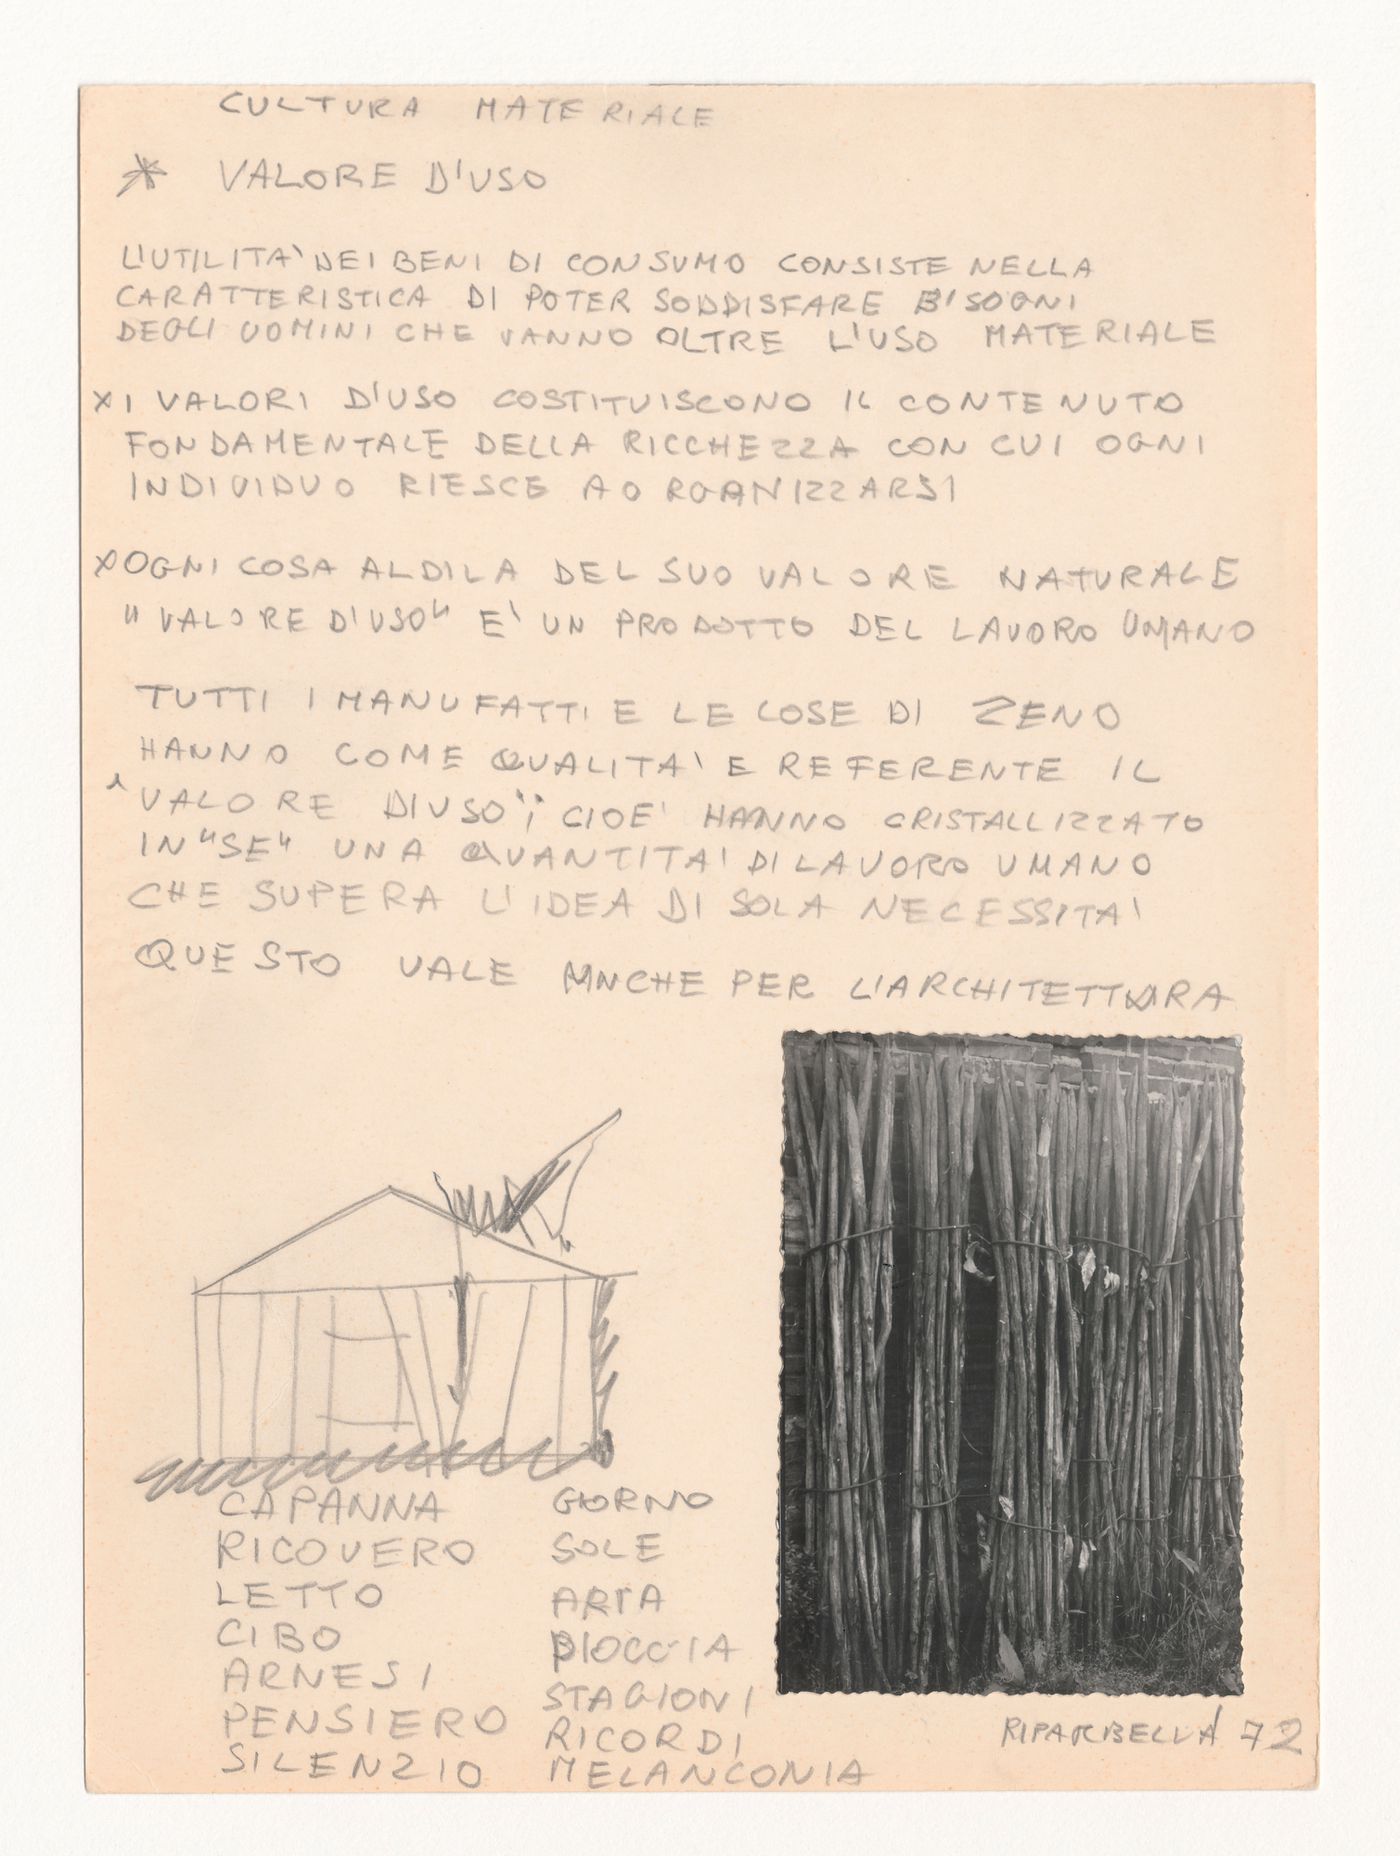 Notes with sketch and photograph for Zeno, une cultura autosufficiente [Zeno, a self-sufficient culture]